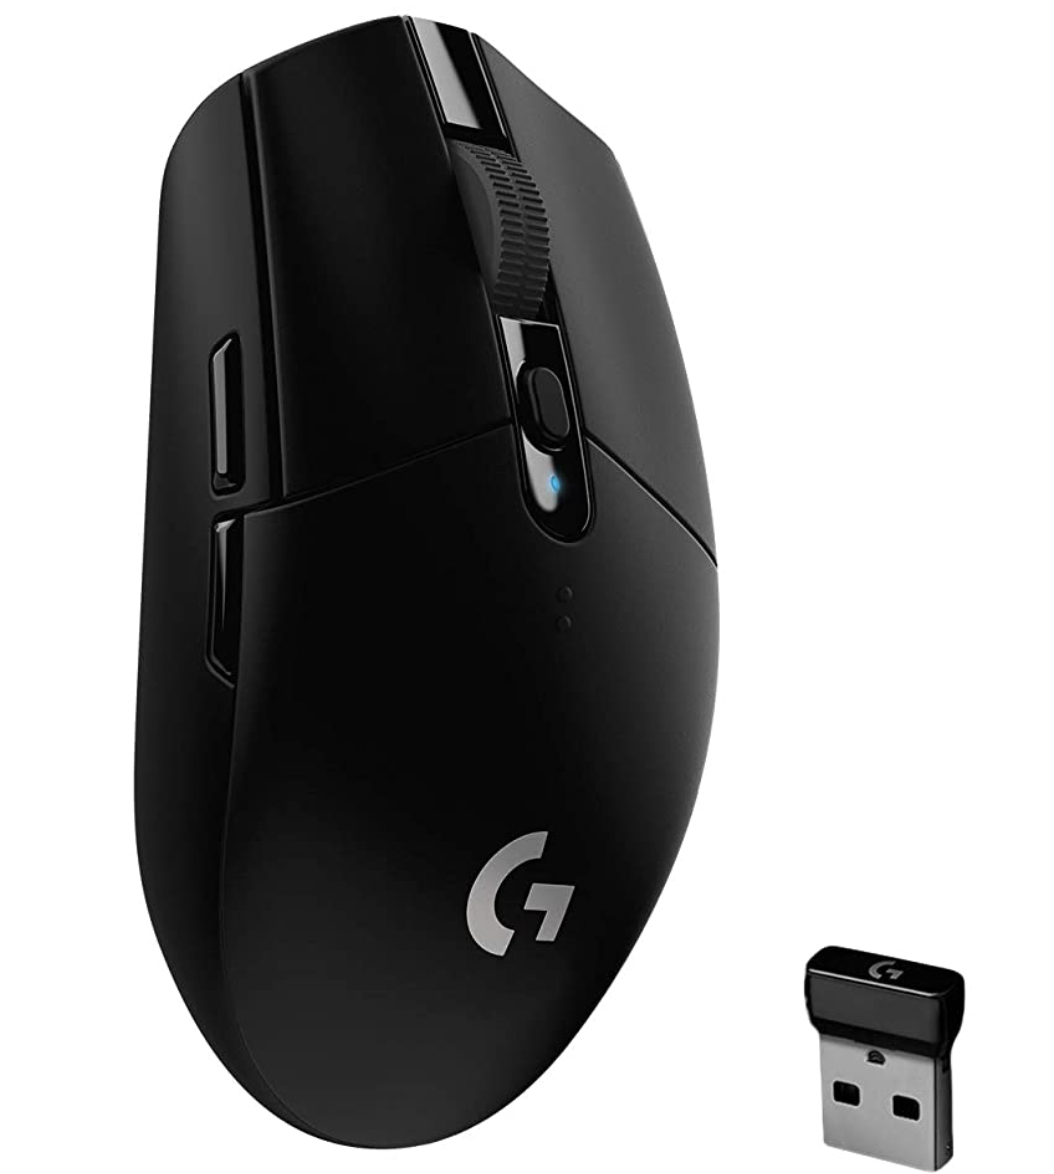 Logitech G305 LIGHTSPEED kabellose Gaming-Maus für nur 34,90€ (statt 39,99€)